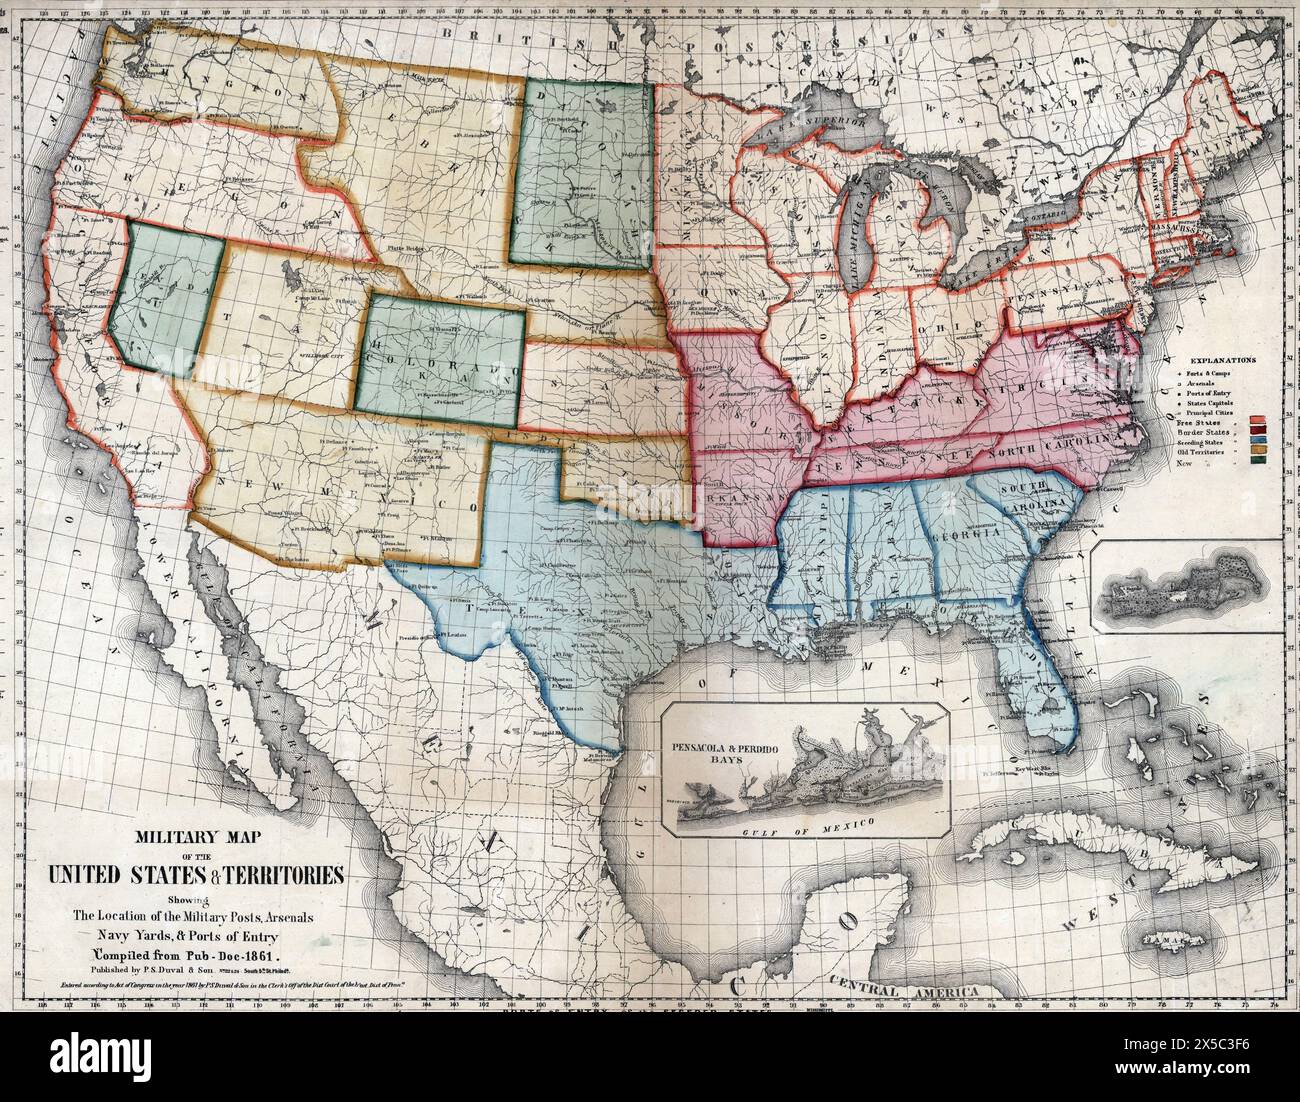 Mappa militare degli Stati Uniti e dei territori che mostra la posizione delle postazioni militari, degli arsenali, dei cantieri navali e dei porti di entrata, 1861 Foto Stock